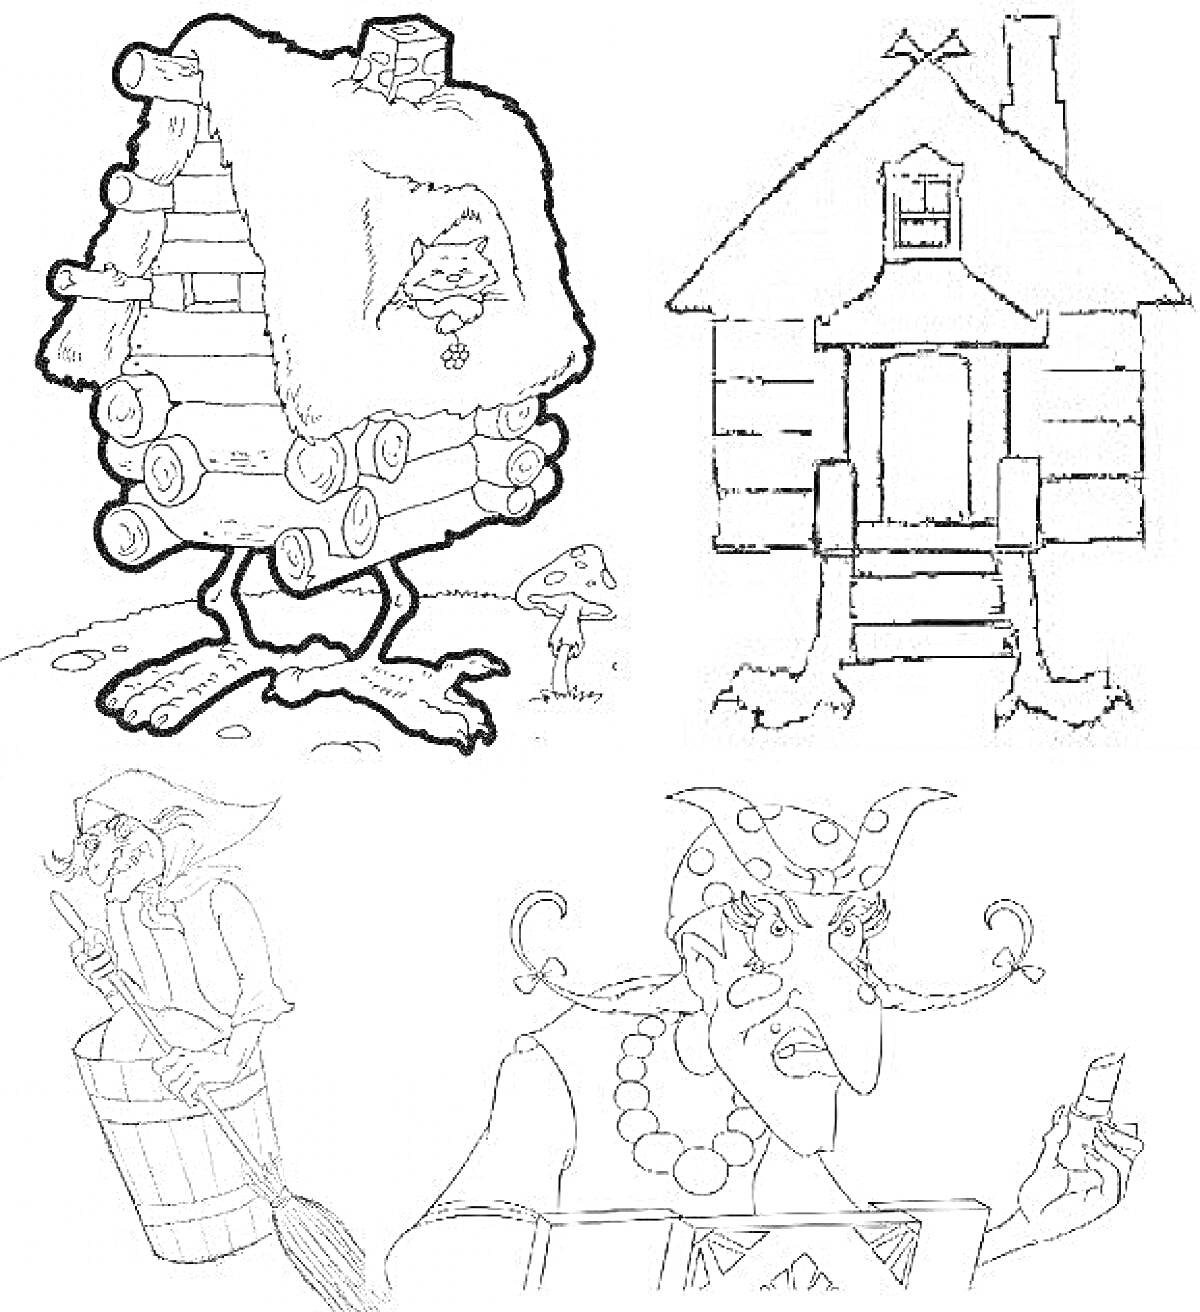 РаскраскаИзбушка на курьих ножках, сказочный домик, Баба-Яга, ступа с метлой